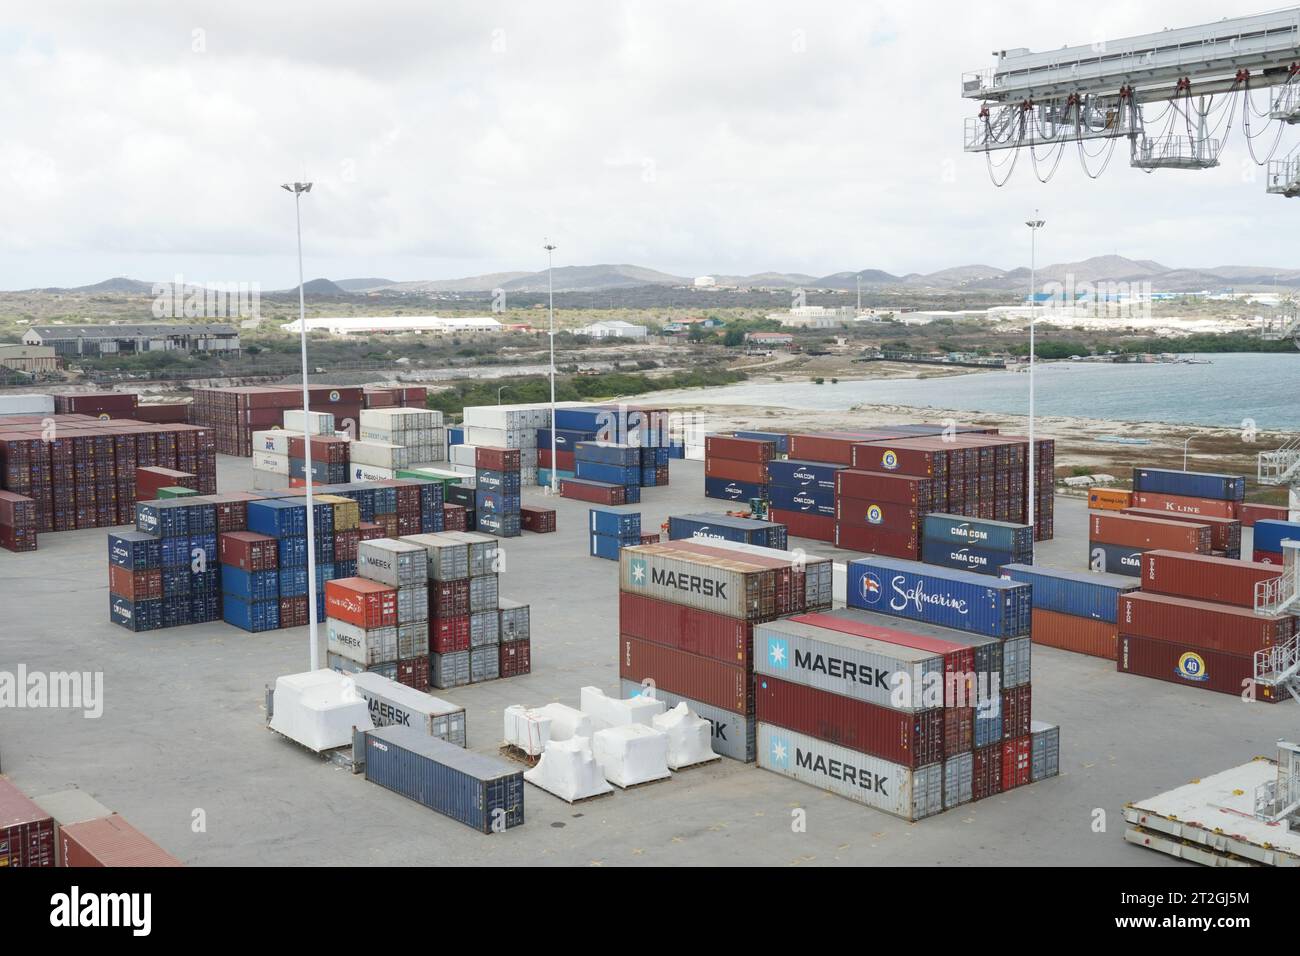 Terminal à conteneurs avec conteneurs arrimés de différents expéditeurs dans le port de Barcadera à Aruba. Banque D'Images